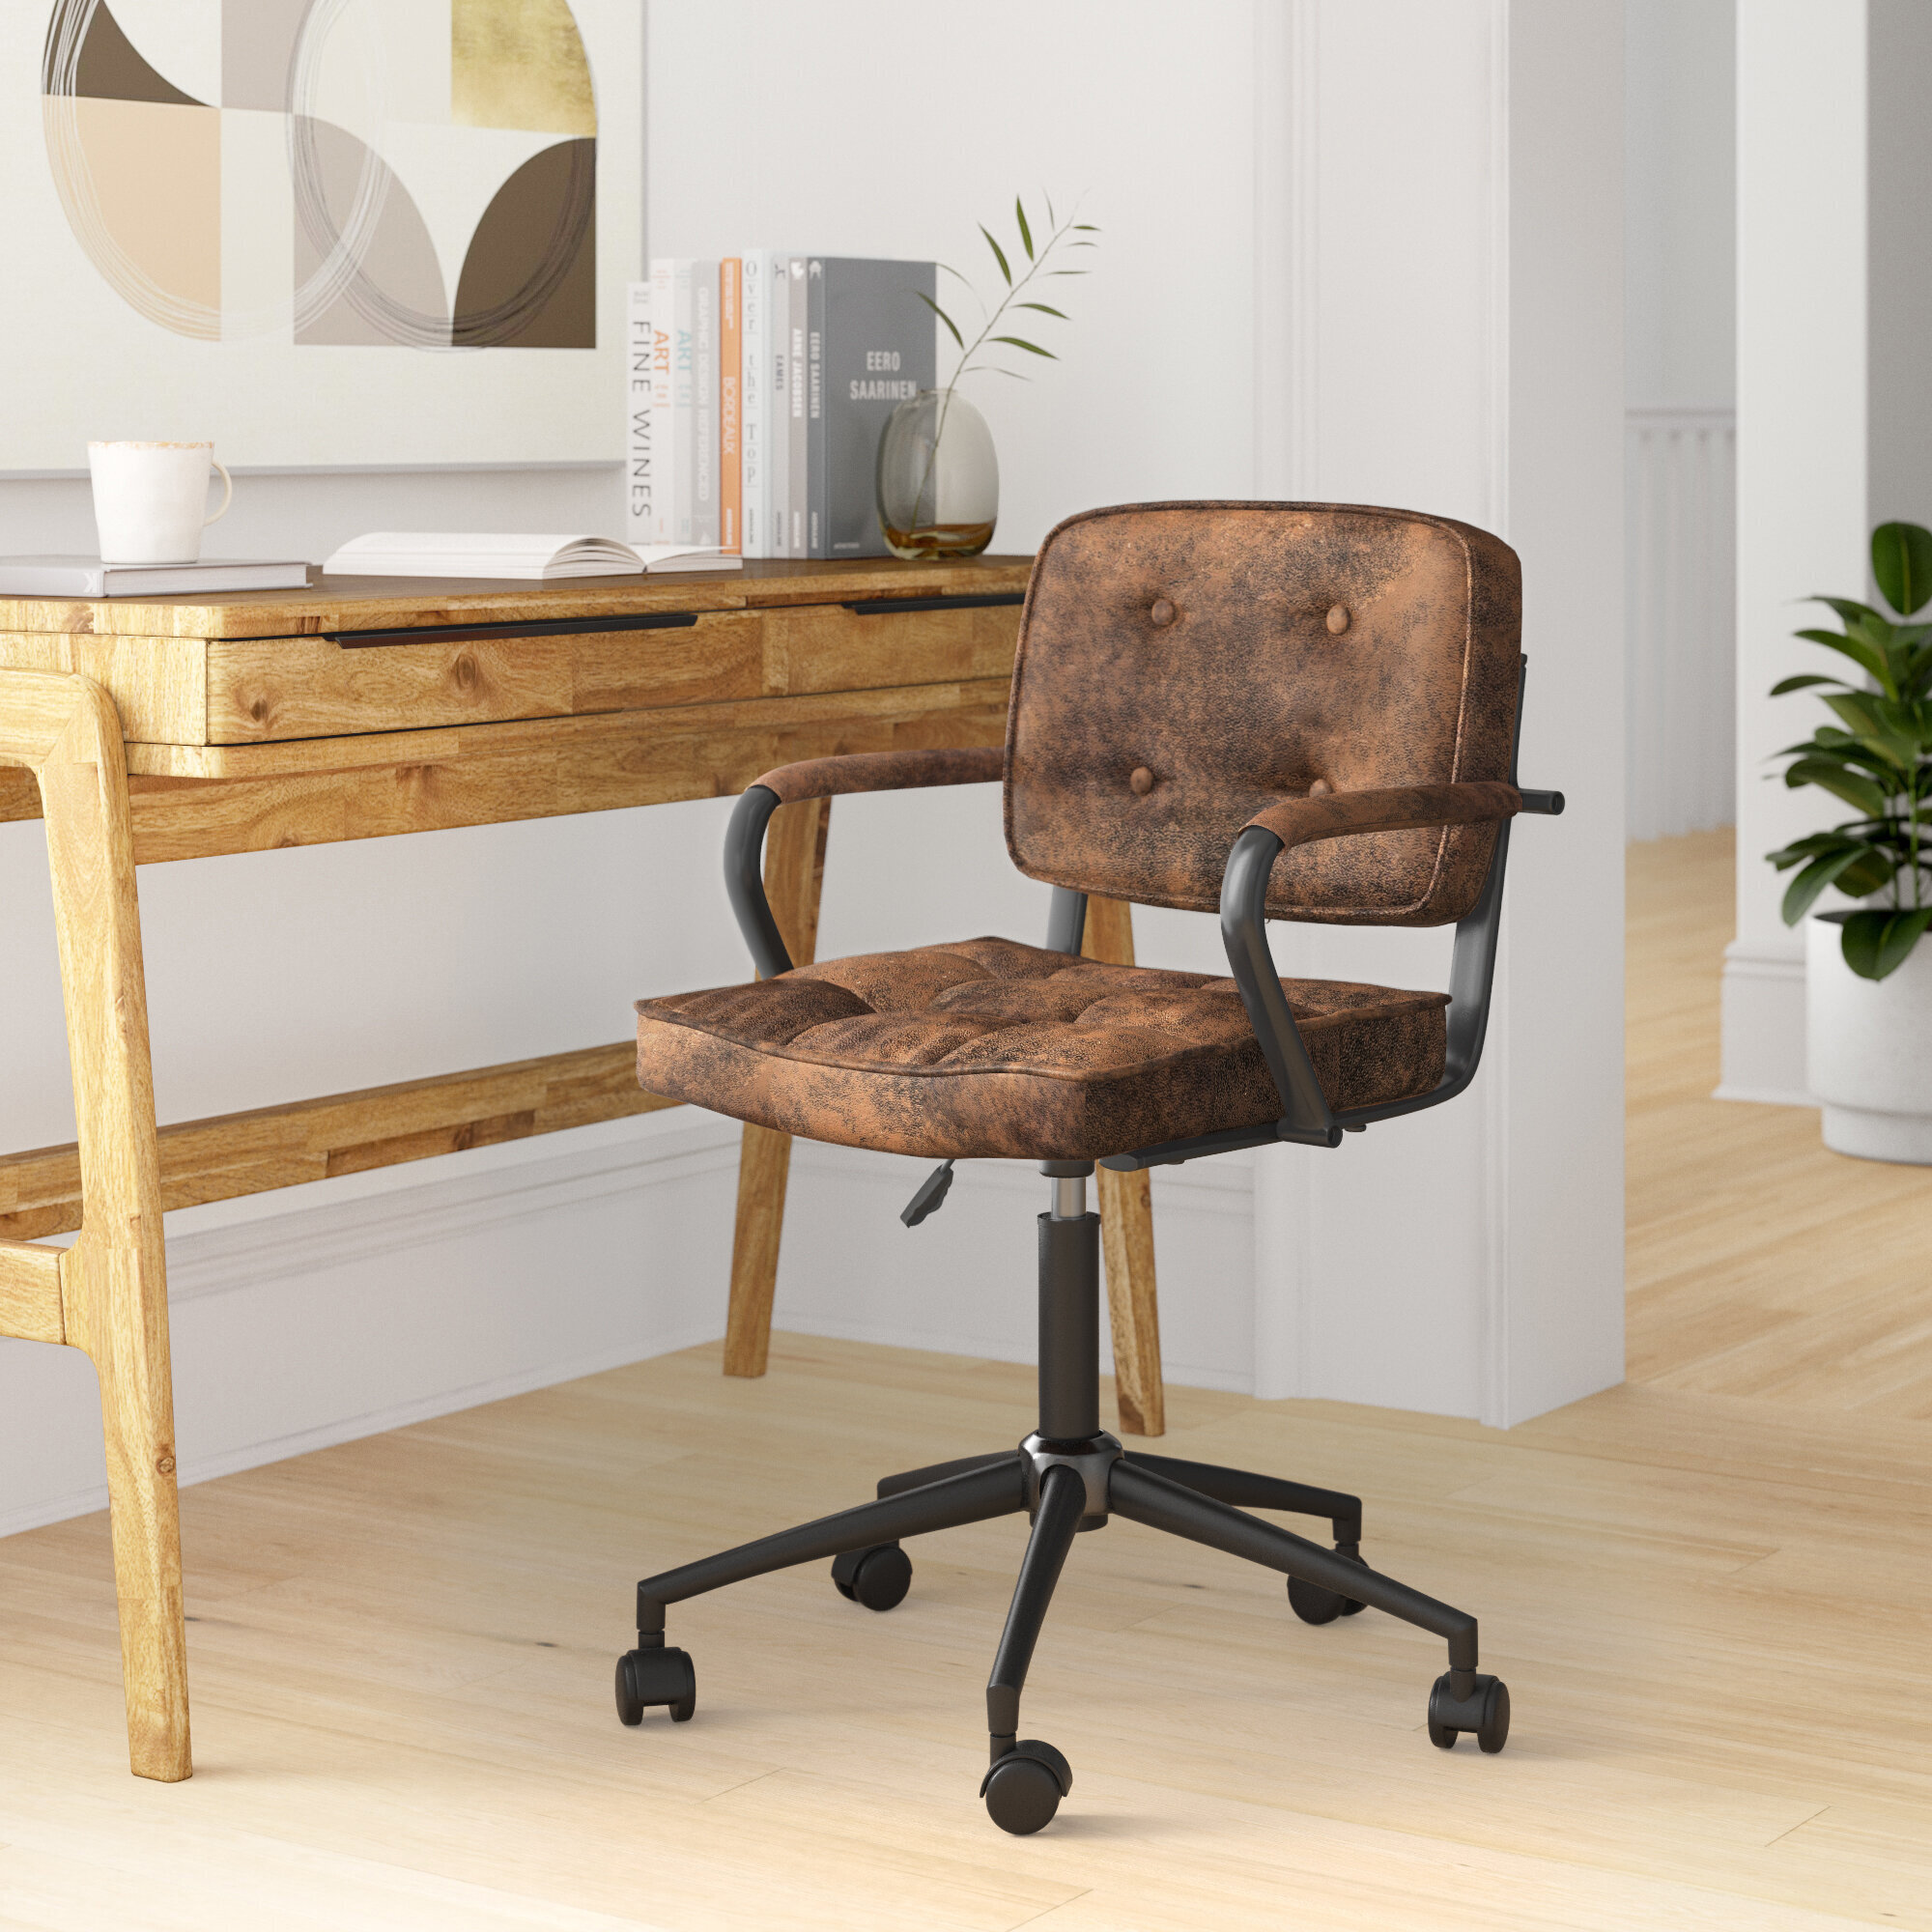 Elastischer Stuhlbezug Robuster Stuhlbezug für Computer Office Desk Black 